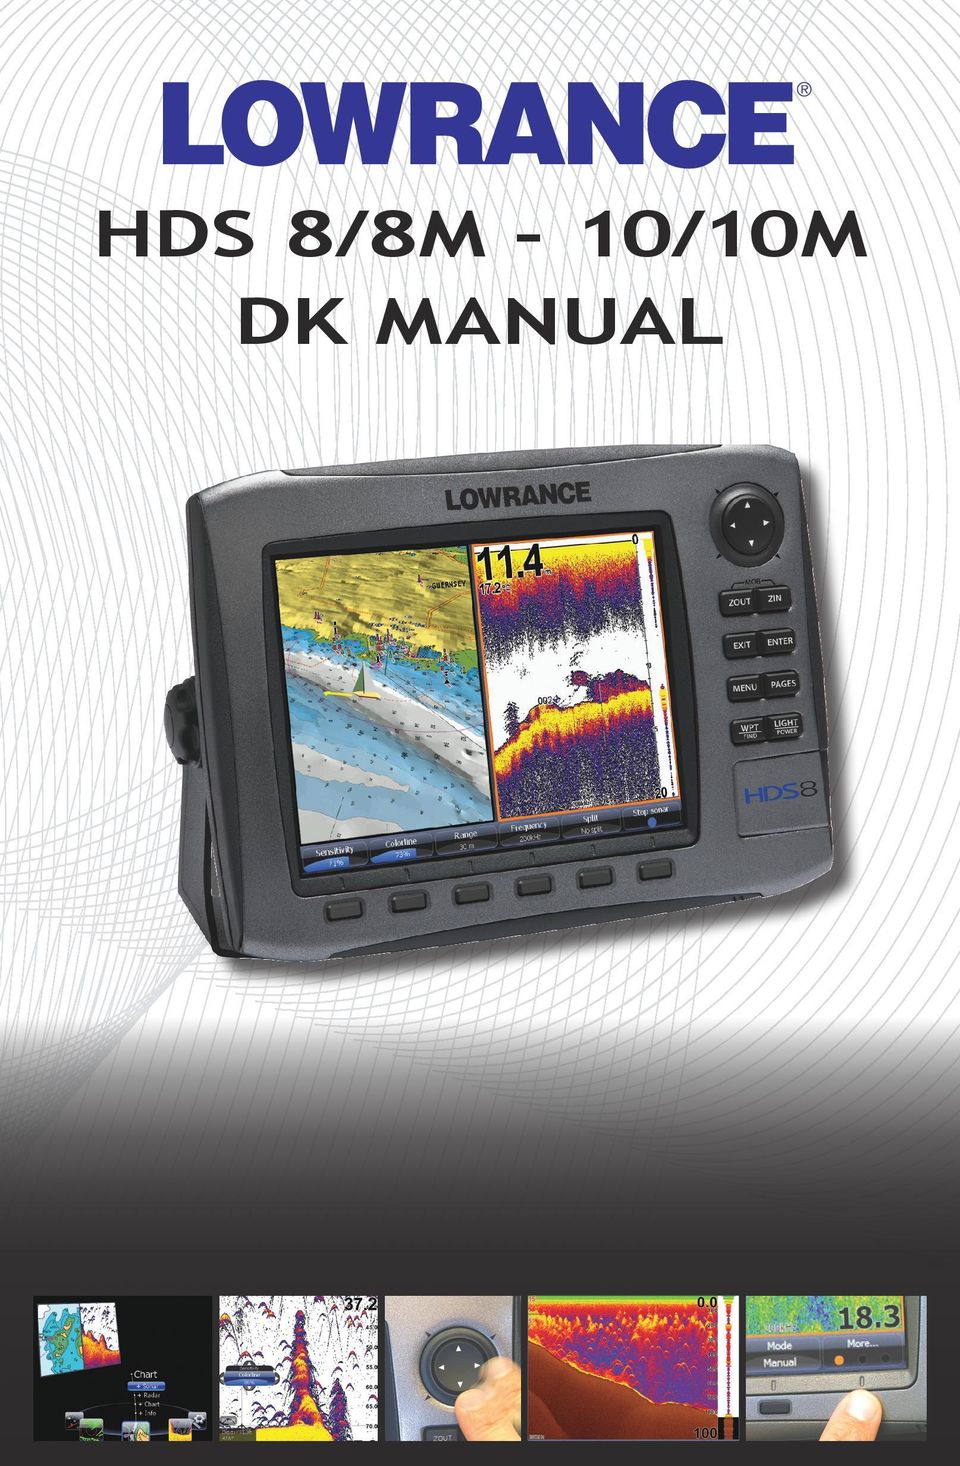 DK manual